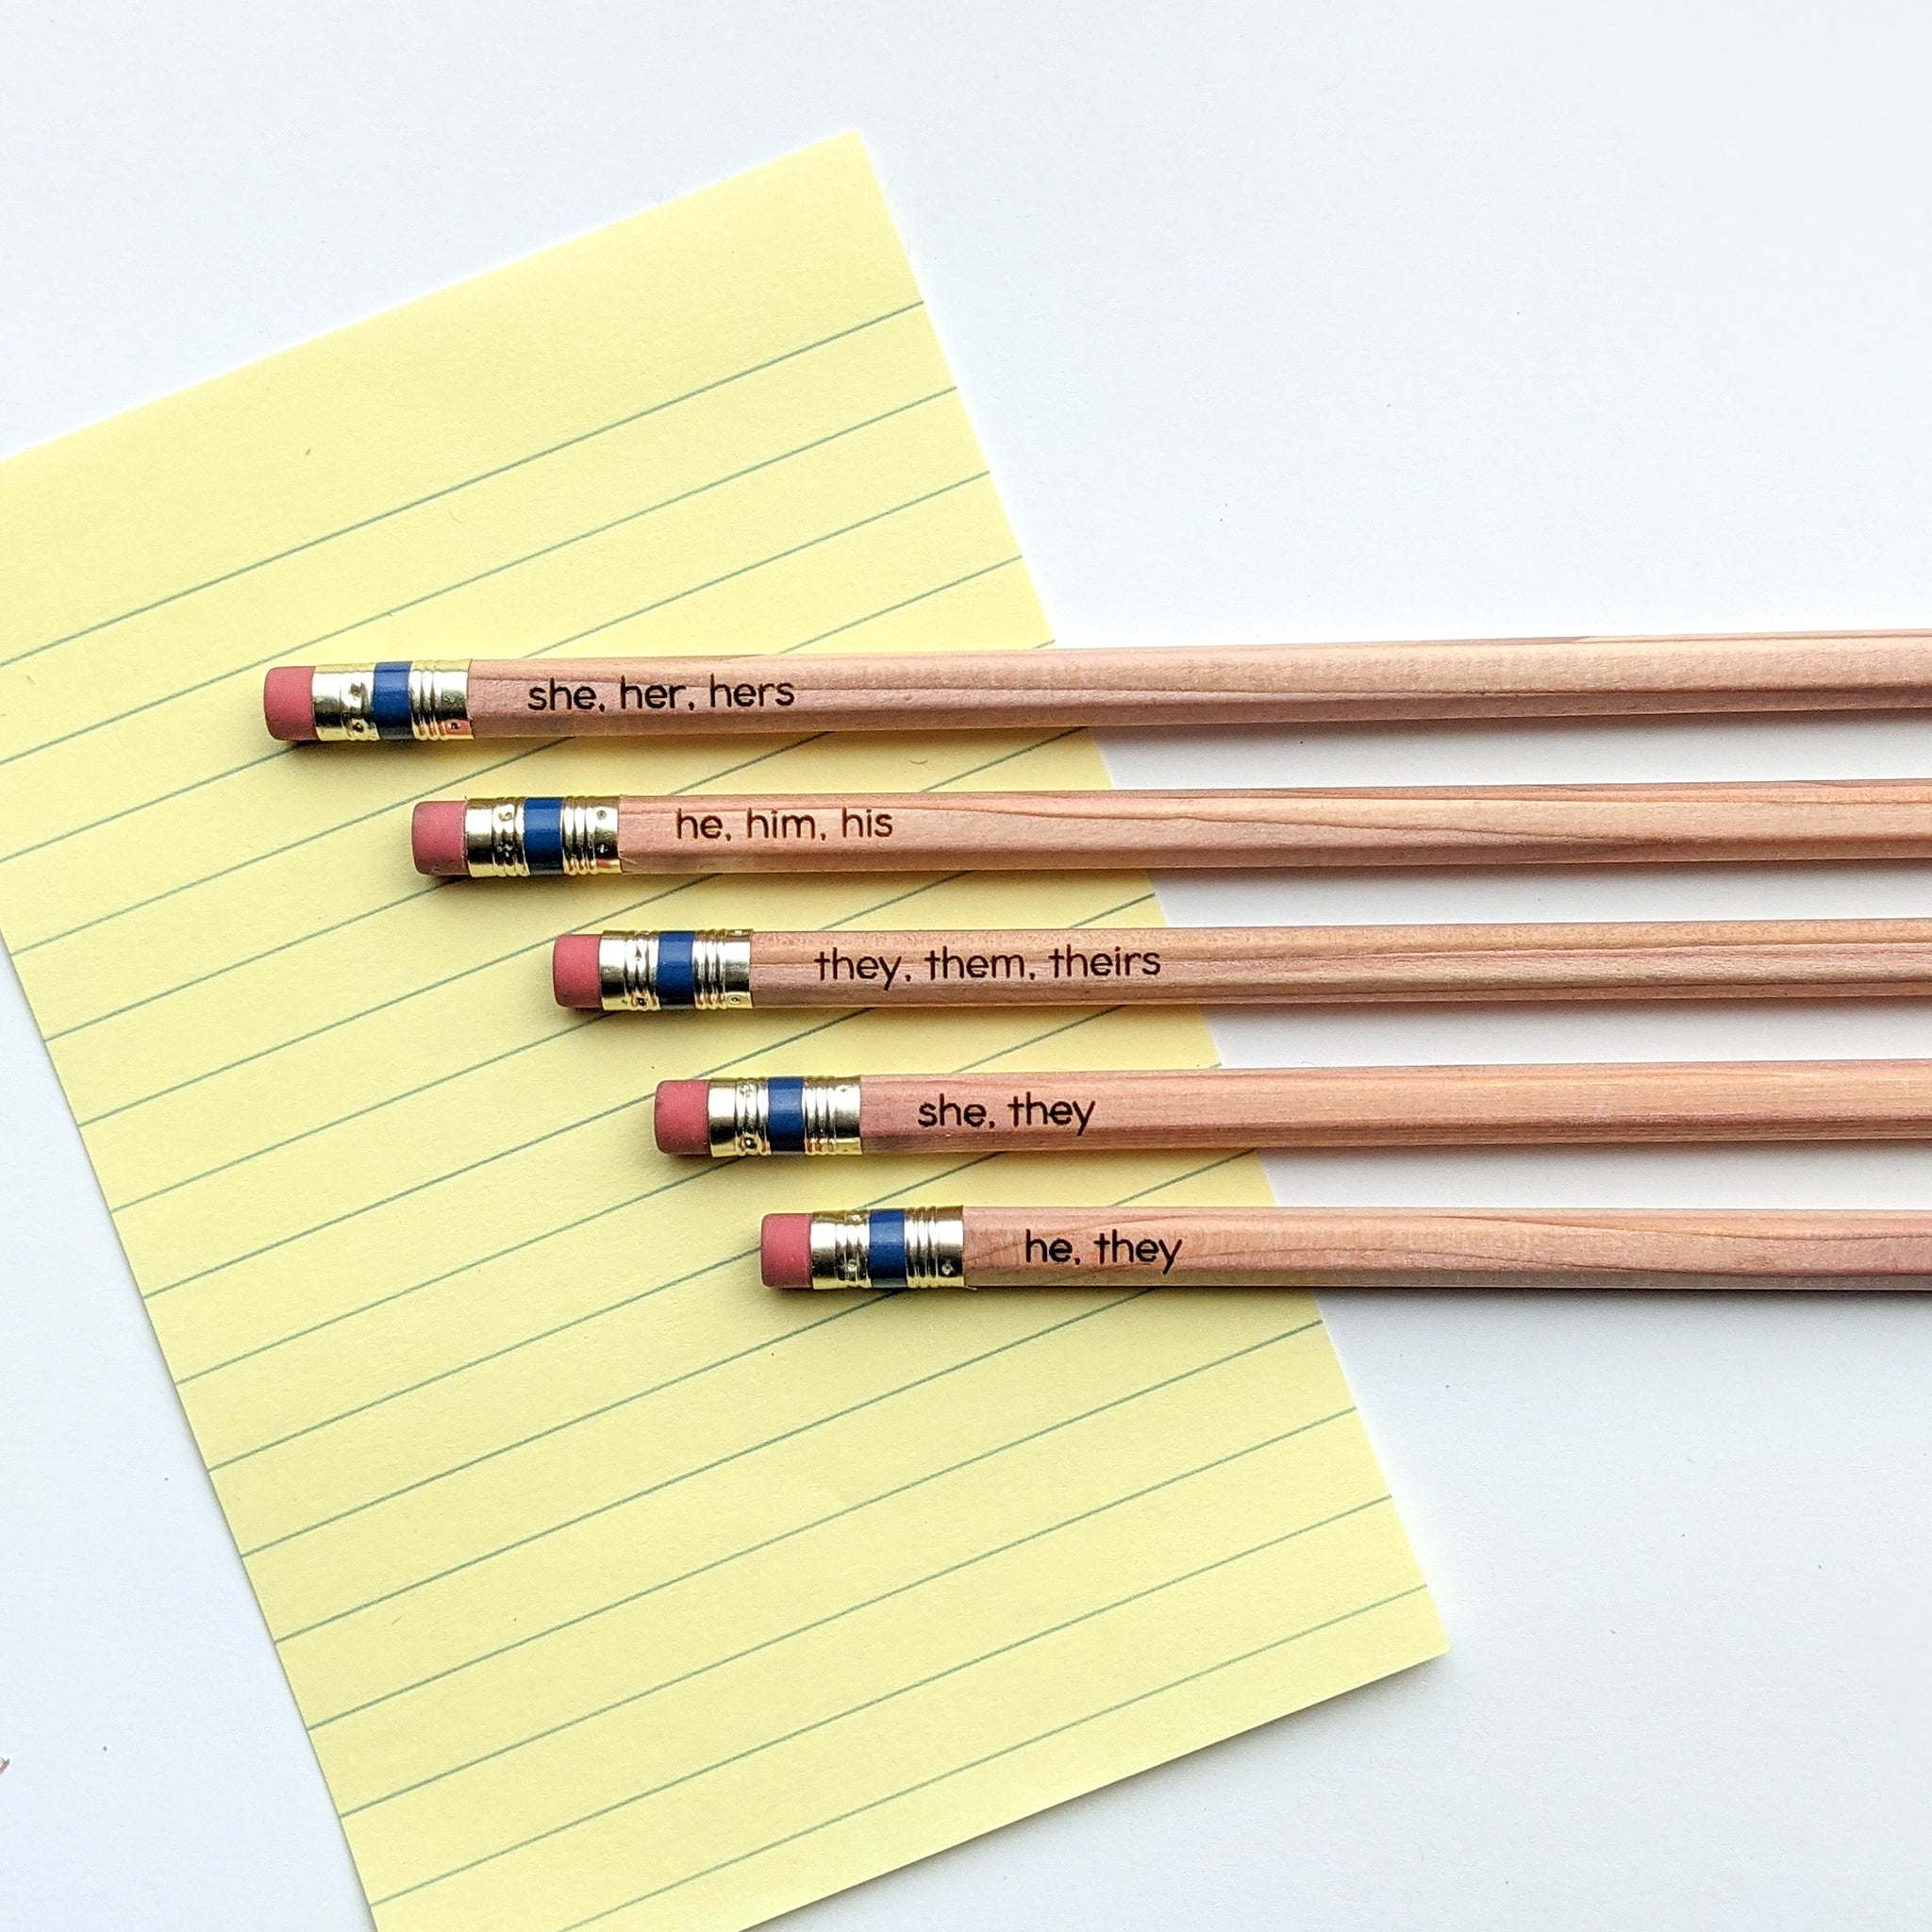 Preferred Gender Pronoun Personalizable Pencils